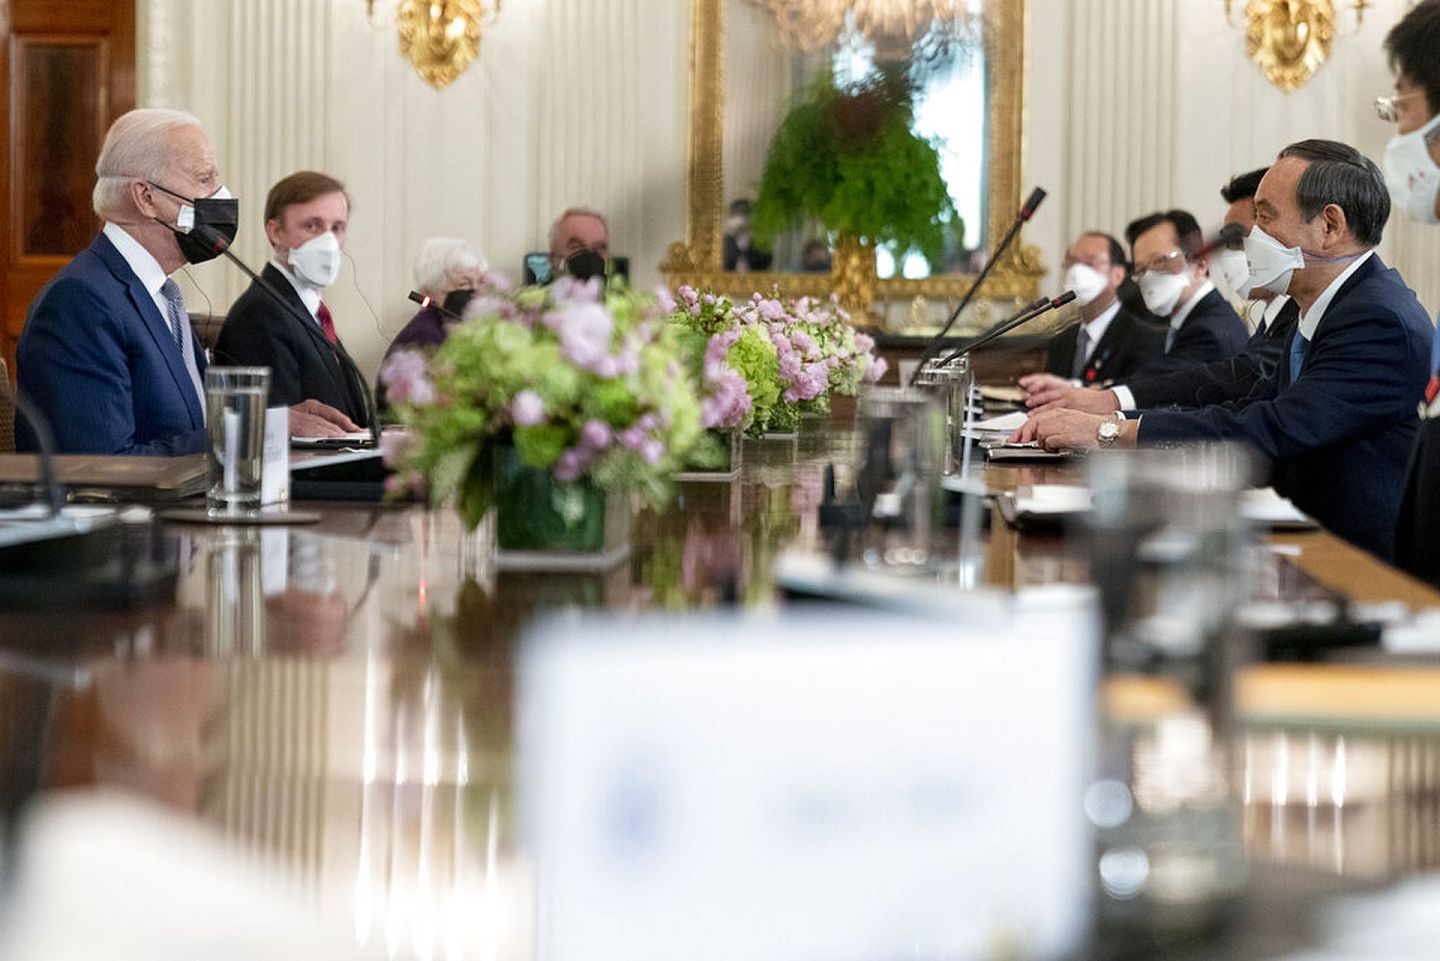 2021年4月16日，拜登在白宫会晤了日本首相菅义伟。日本《读卖新闻》4月17日报道称，菅义伟和拜登（通过口译员）进行了一对一的会谈，期间美国方面准备了正餐的汉堡。（AP）